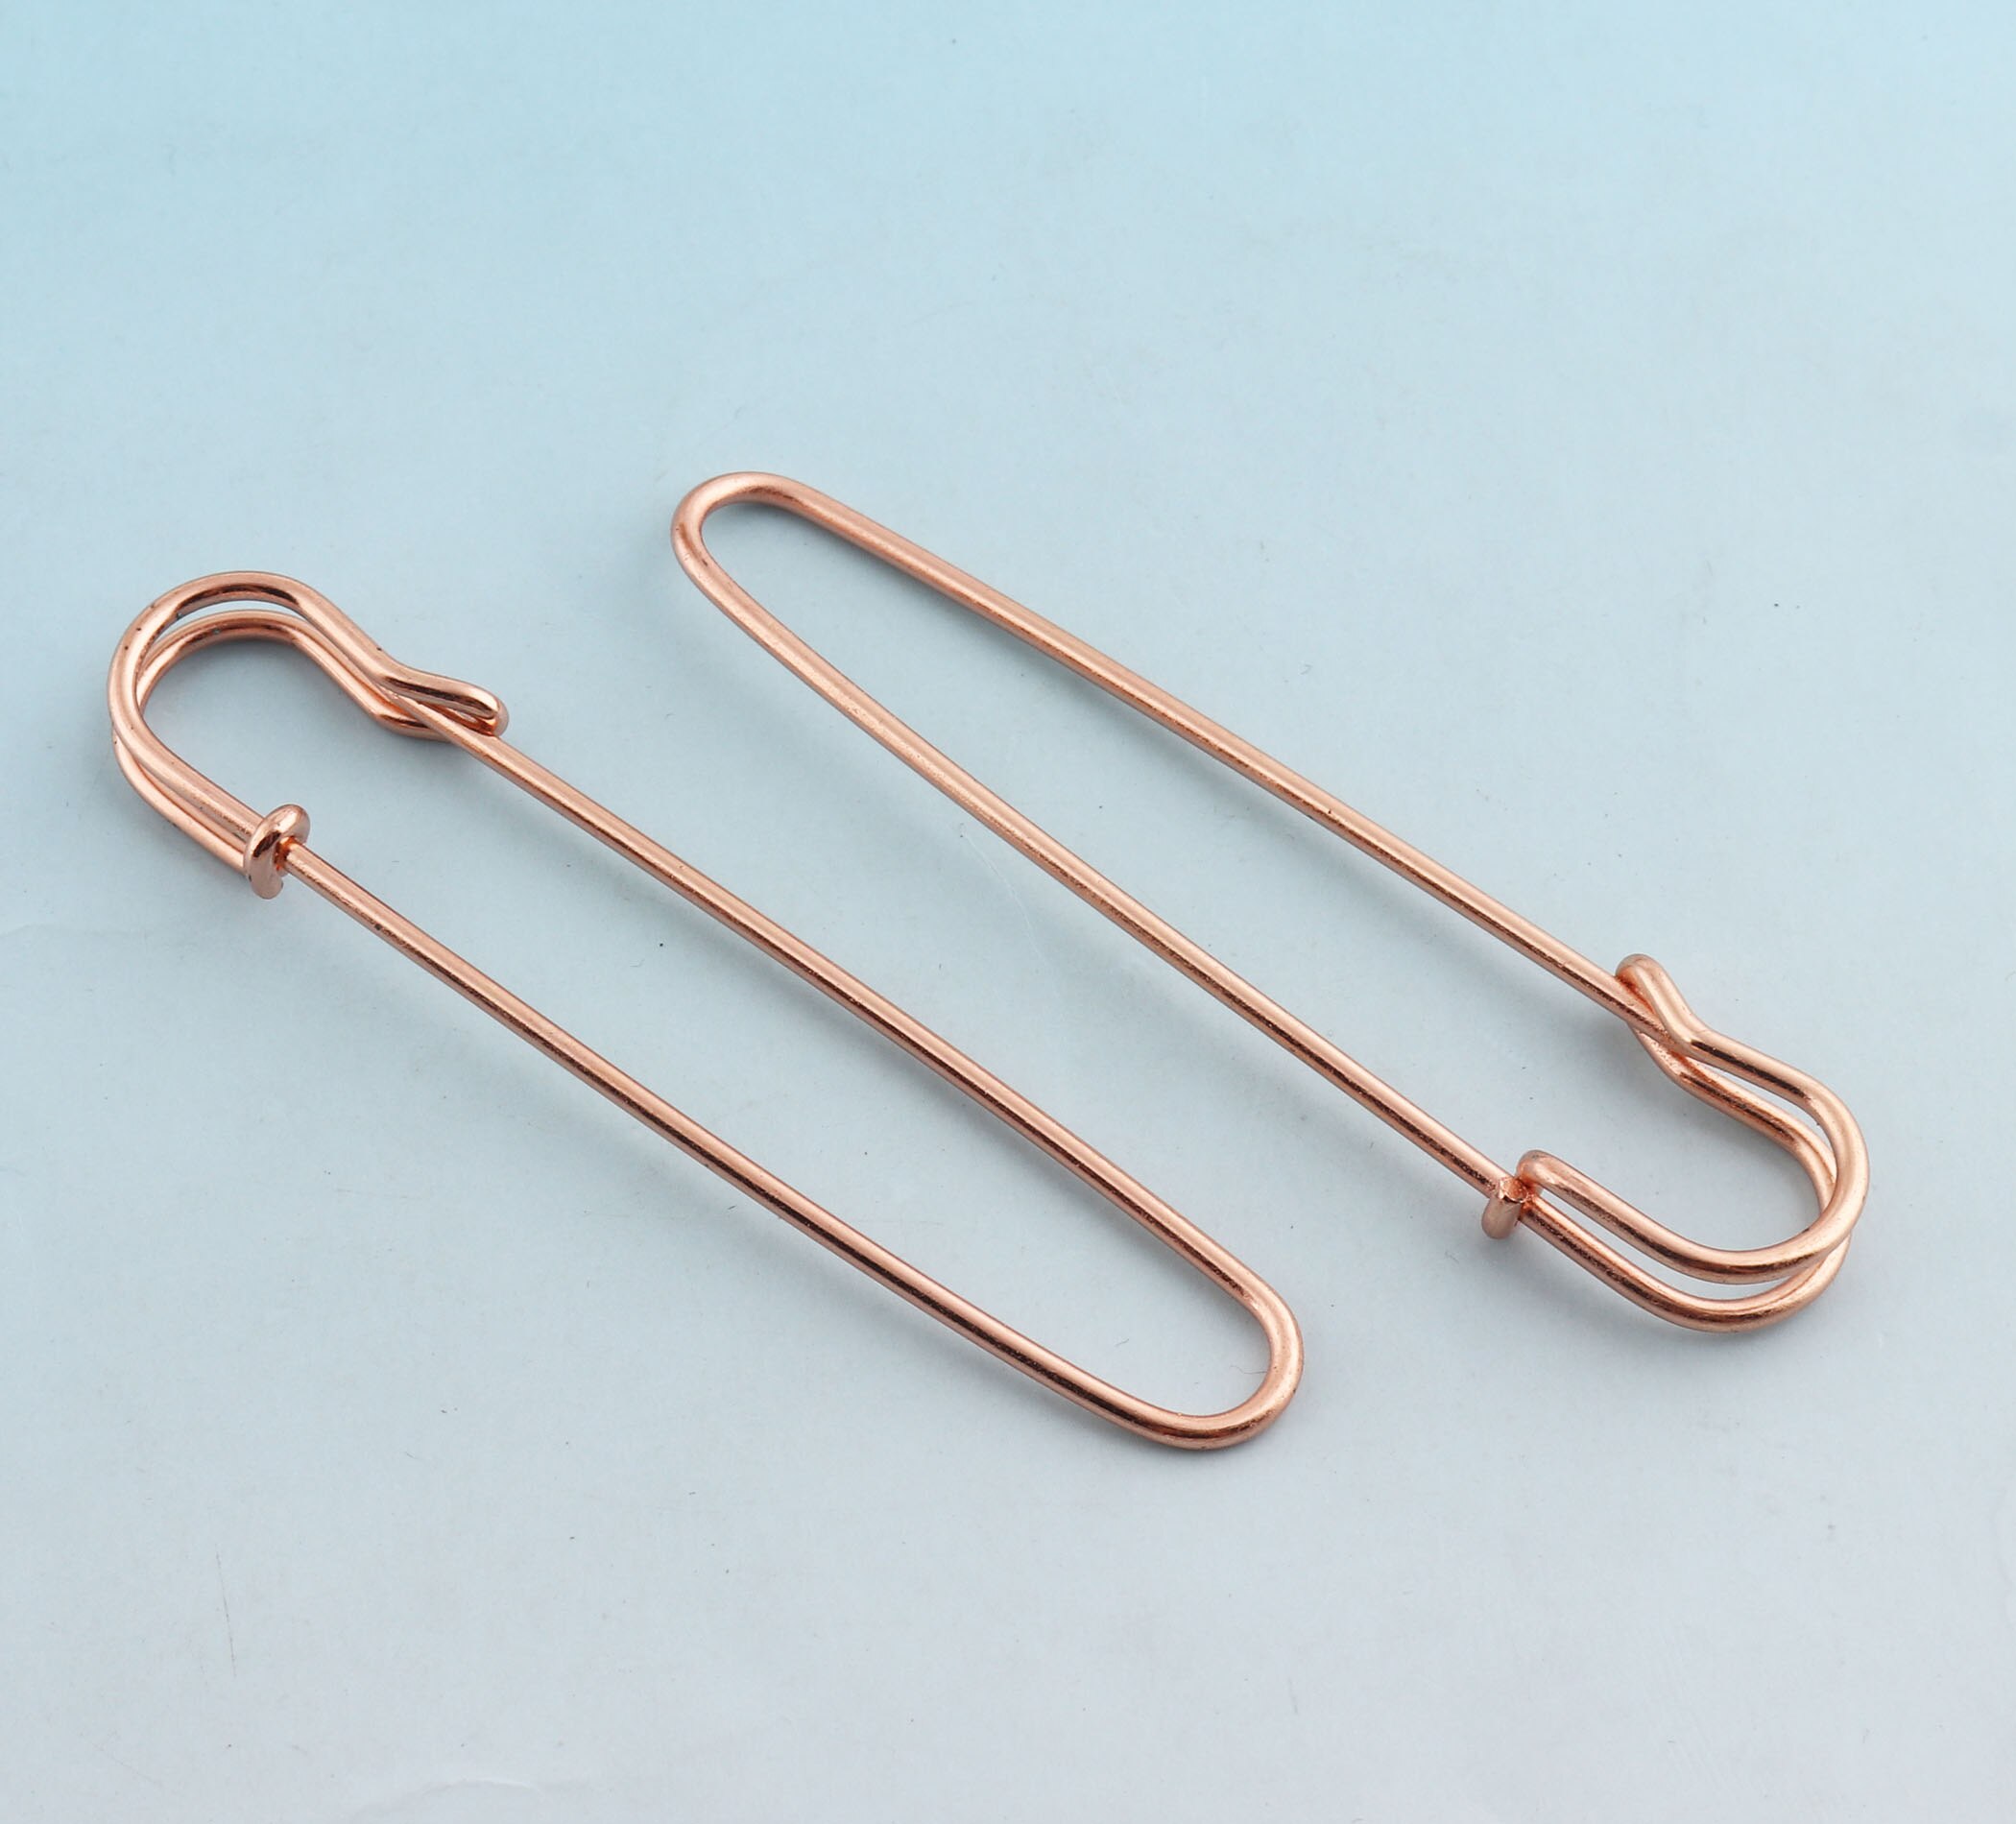 Jumbo sikkerhedsnåle 85mm store sikkerhedsnåle rose guld sikkerhedsnåle håndværksfund metalnåle broche sikkerhedsnåle diy syværktøj: Rose guld